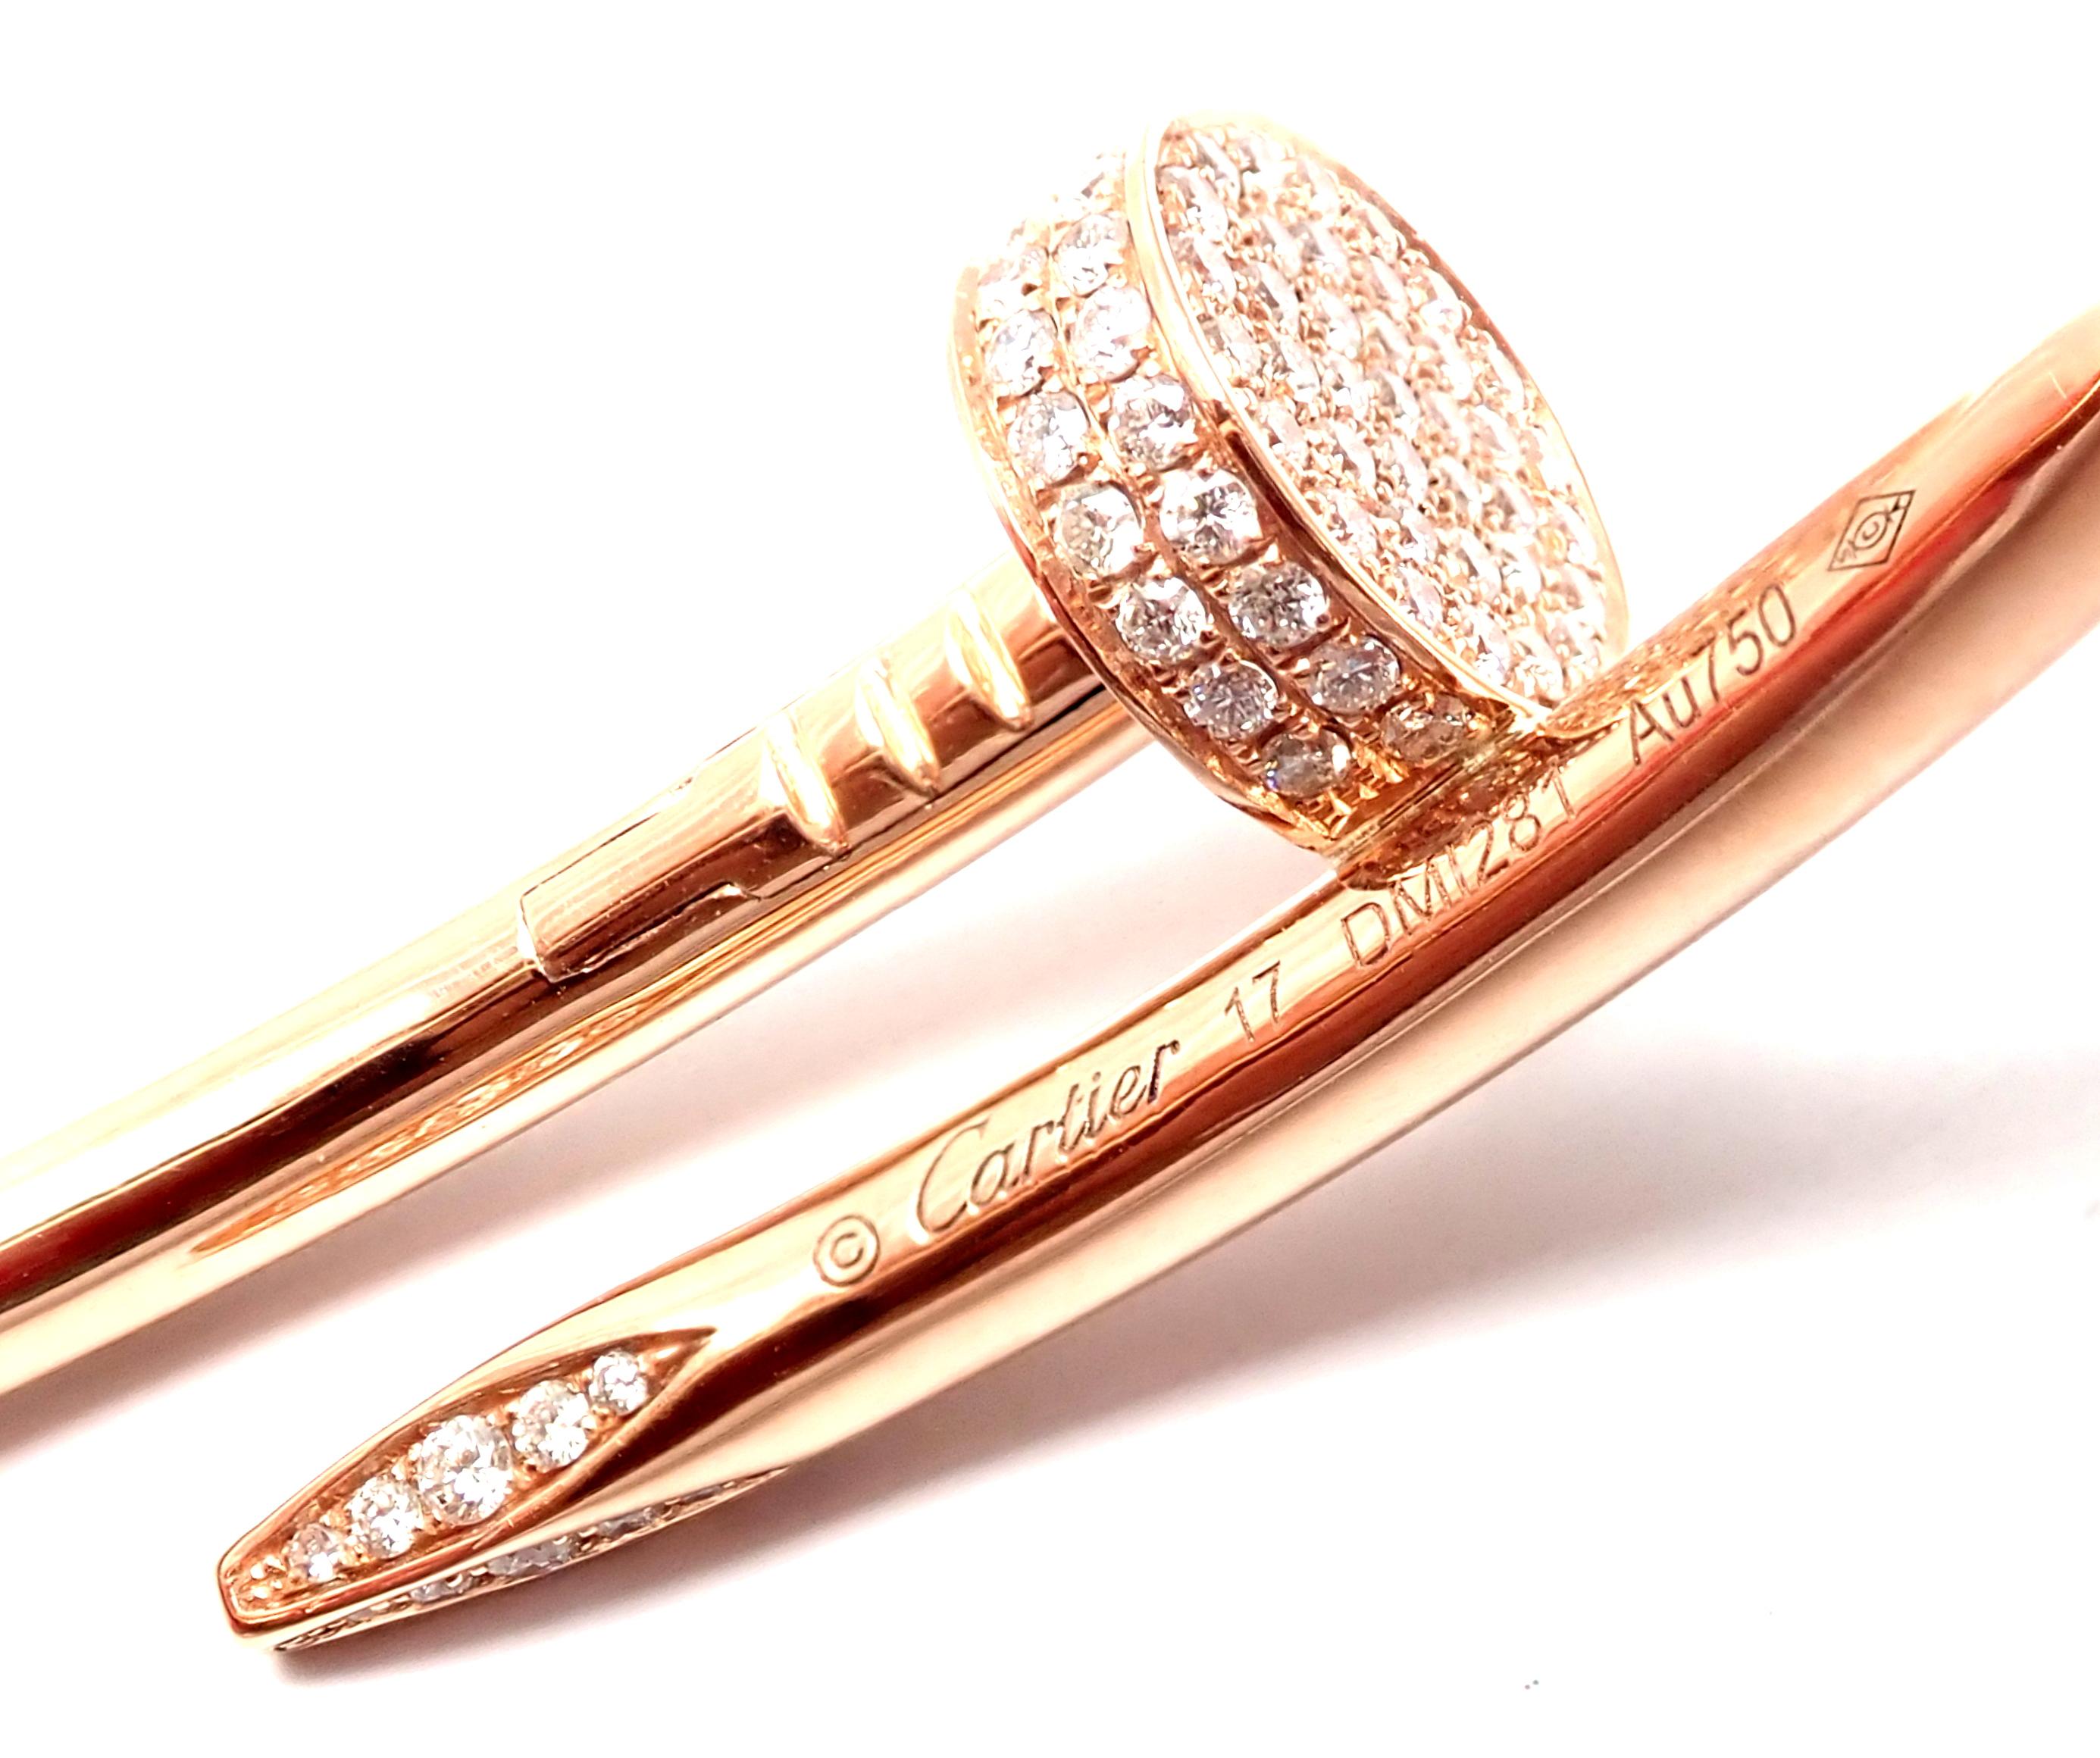 Cartier Juste Un Clou Nagel 2::26 Karat Diamant Rose Gold Armreif Armband 2